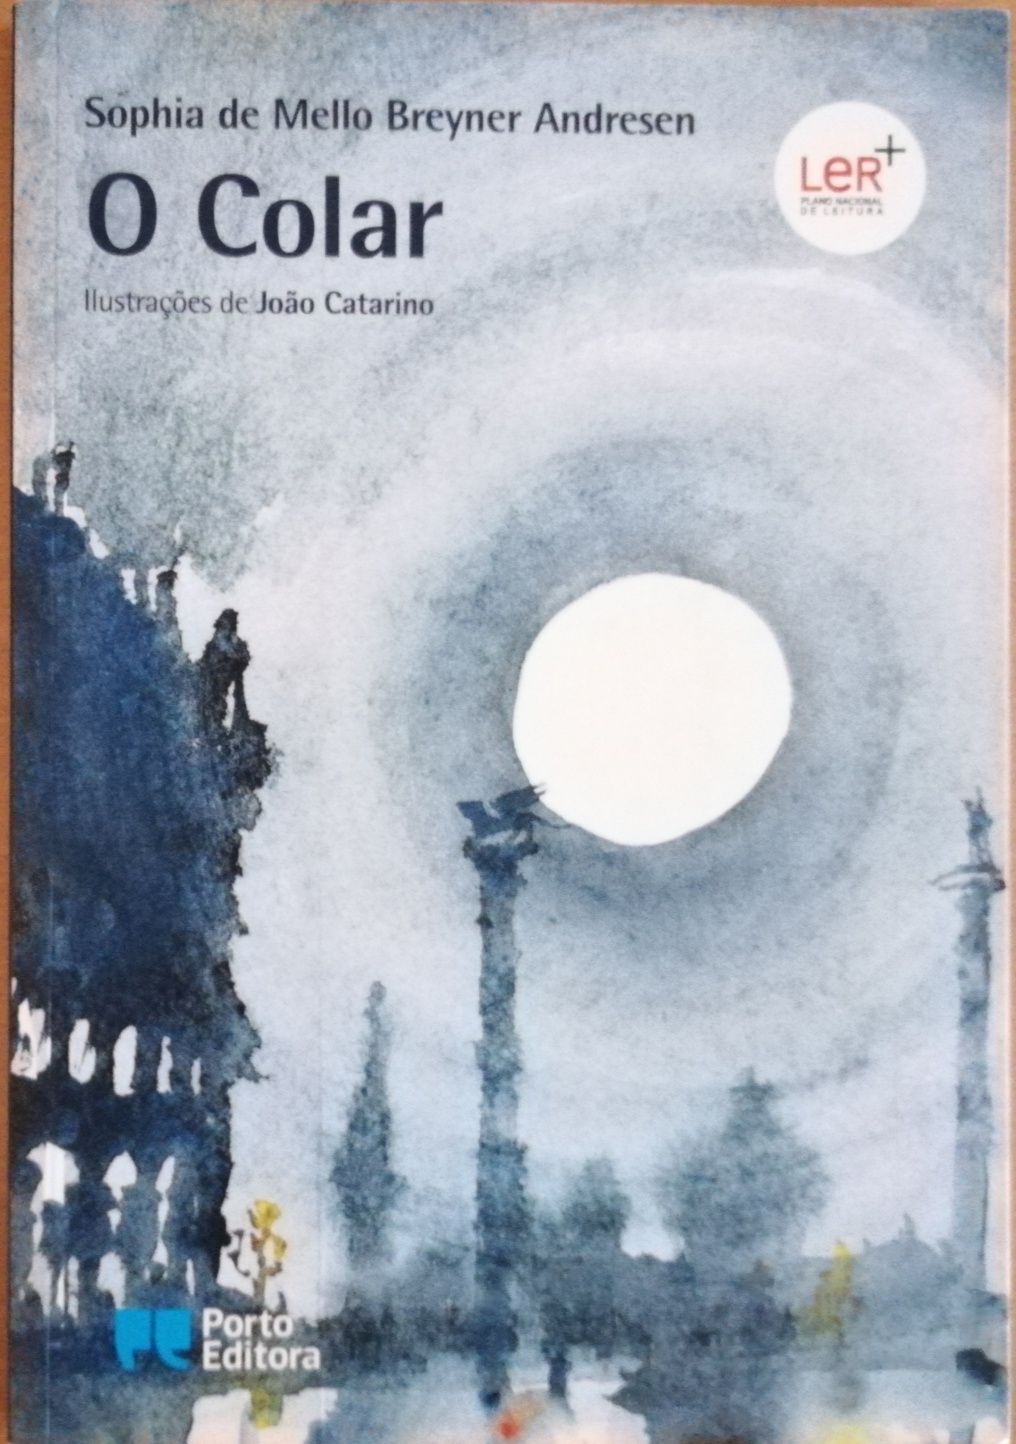 Livro "O Colar", Sophia de Melo Breyner Andresen